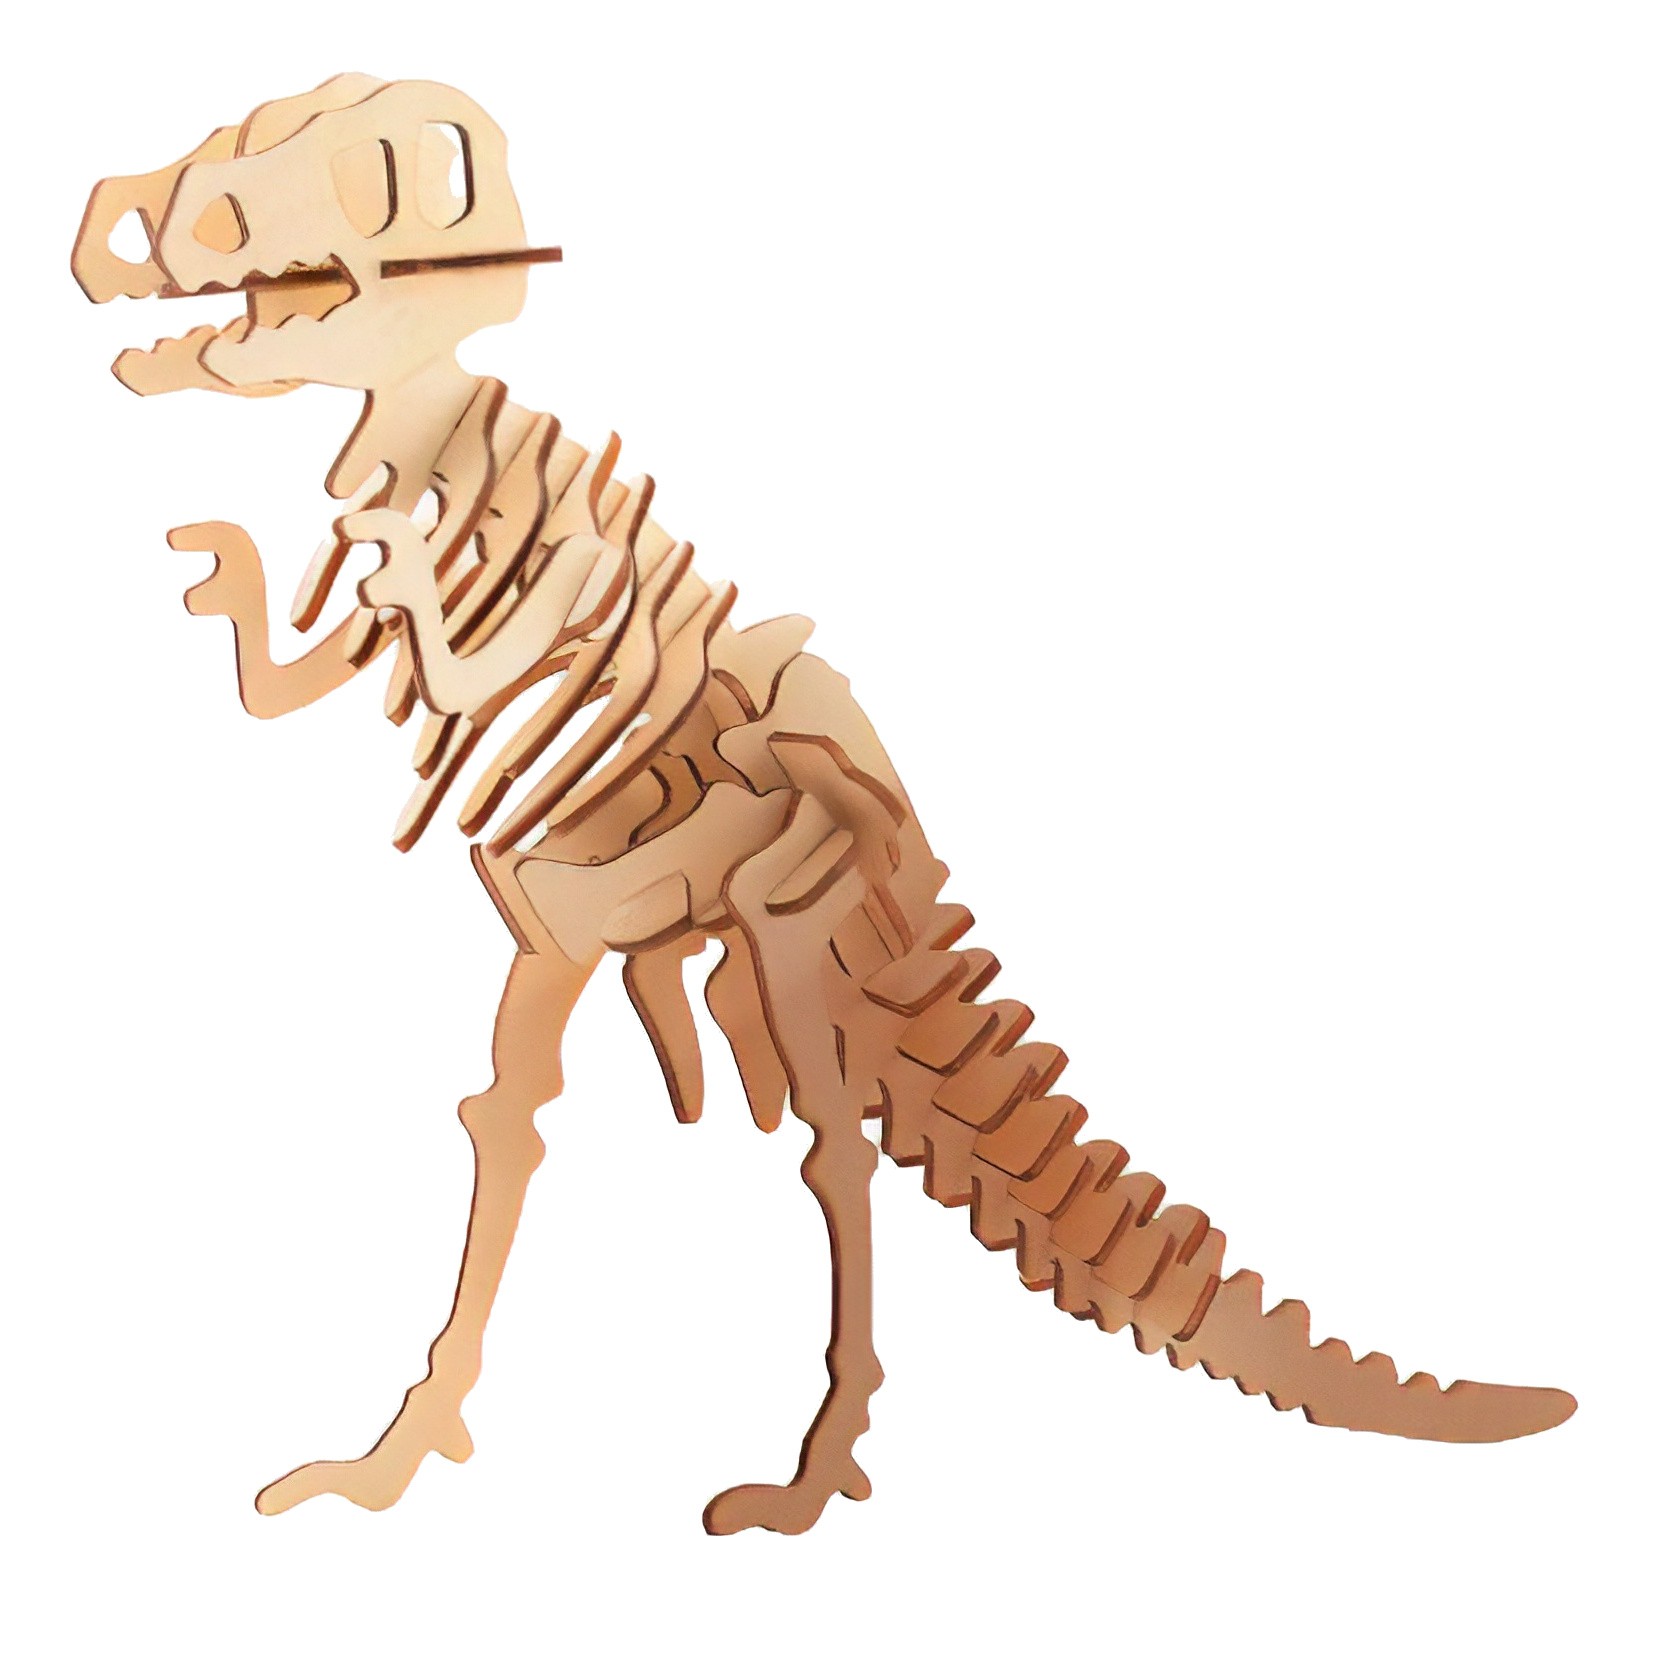 Running T-Rex 3D: Jurassic Din - Izinhlelo zokusebenza ku-Google Play